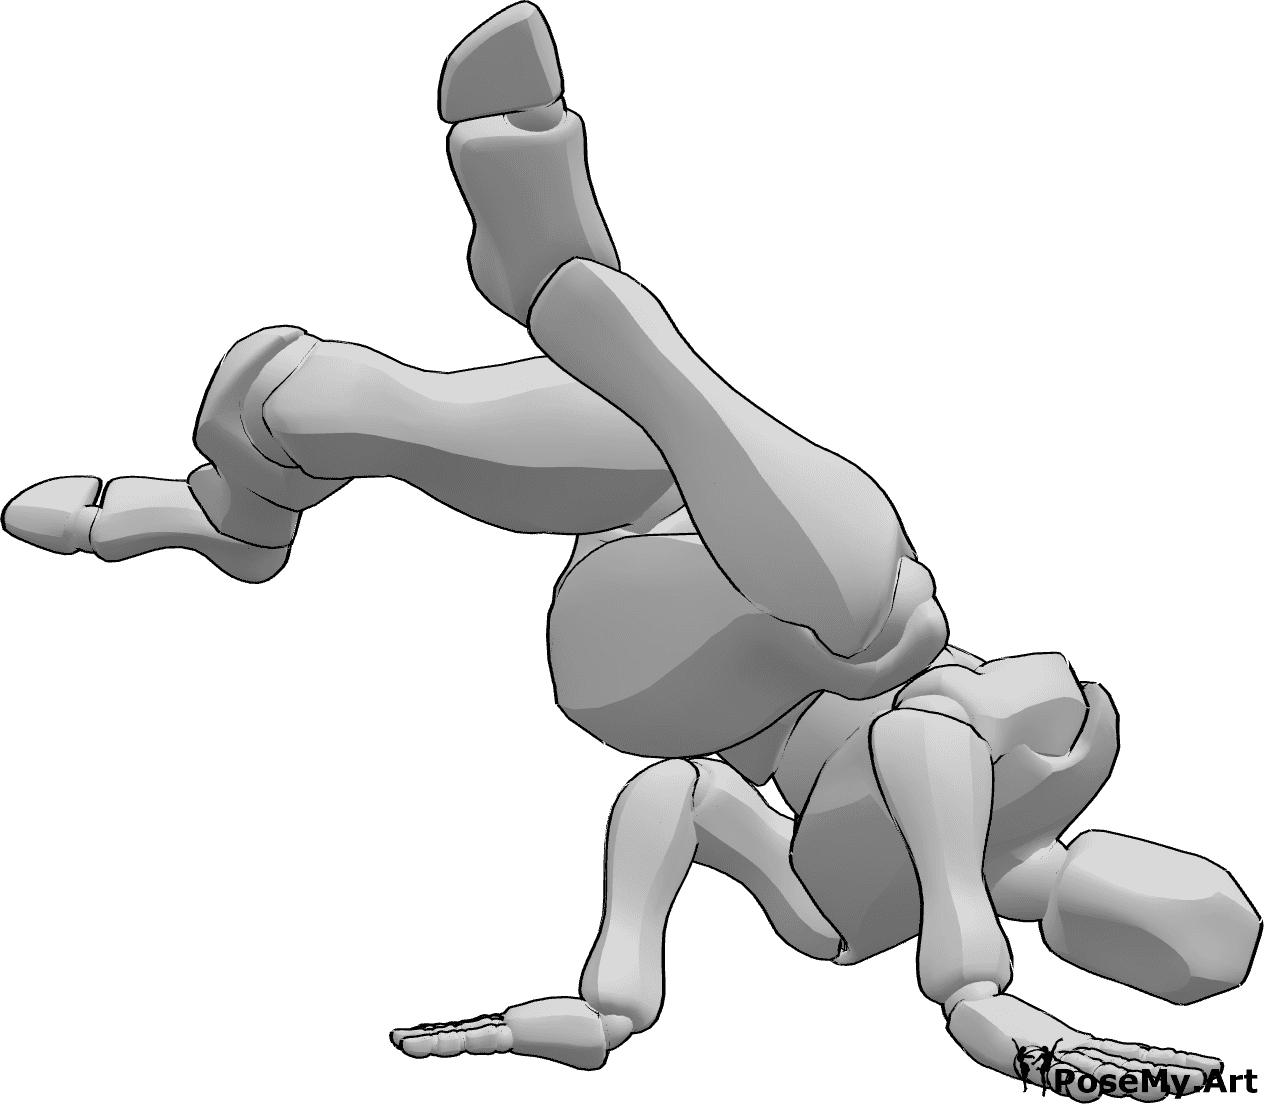 Pose Reference- Breakdance raising legs pose - Male is doing breakdance, raising both legs in the air pose